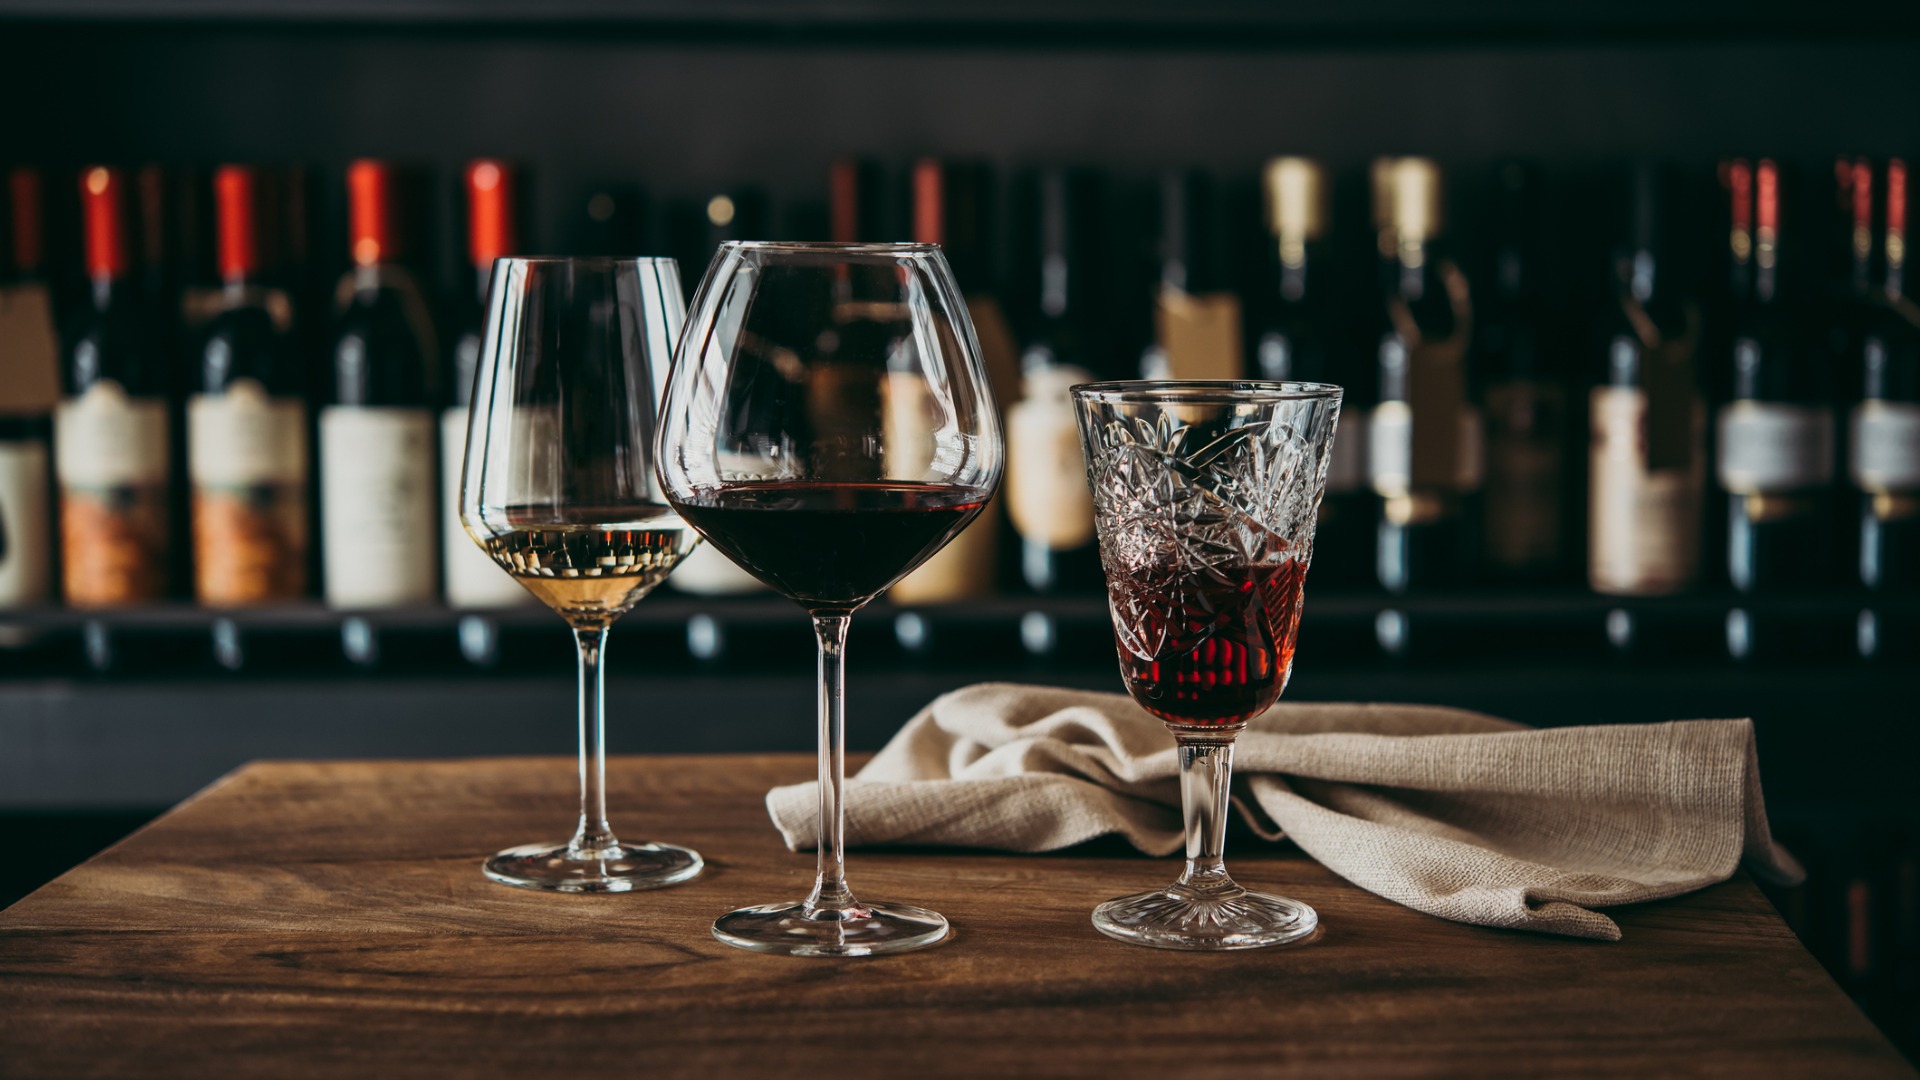 Această imagine prezintă trei pahare diferite de vin umplute cu vin alb, roșu și, respectiv, rose.  Pe fundal un perete plin cu sticle de vin. 